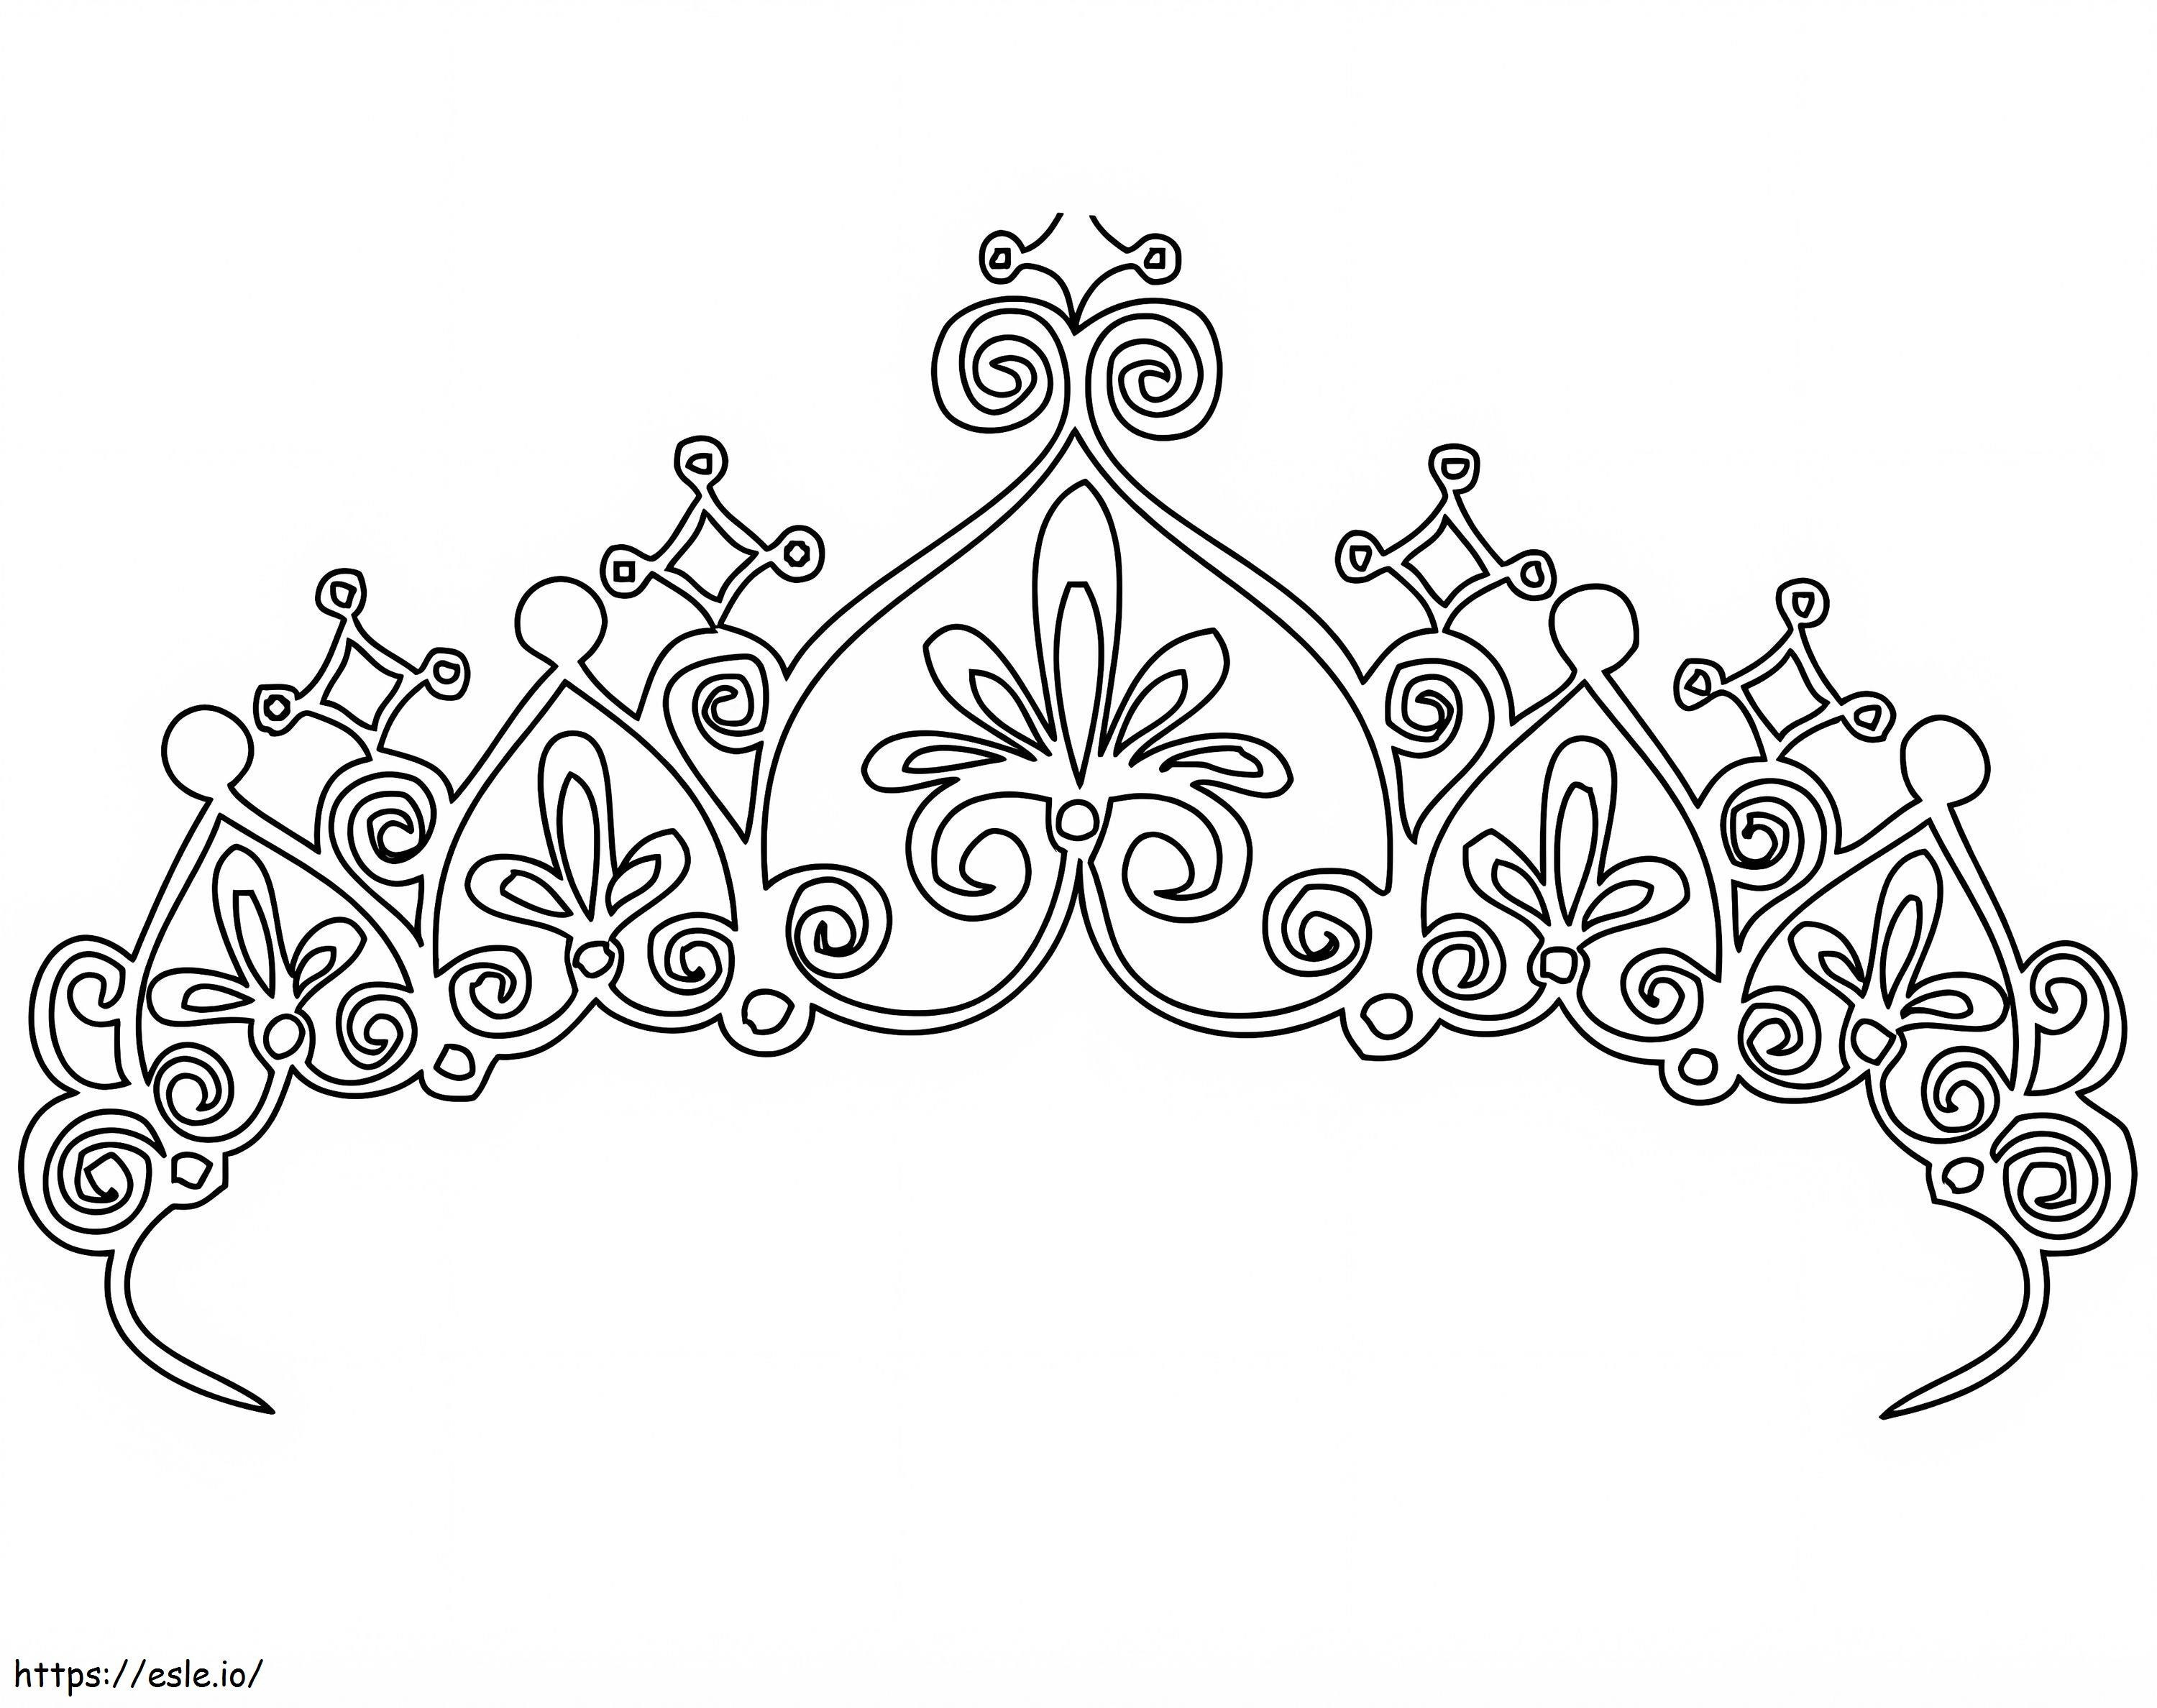 Coroa de princesa para colorir